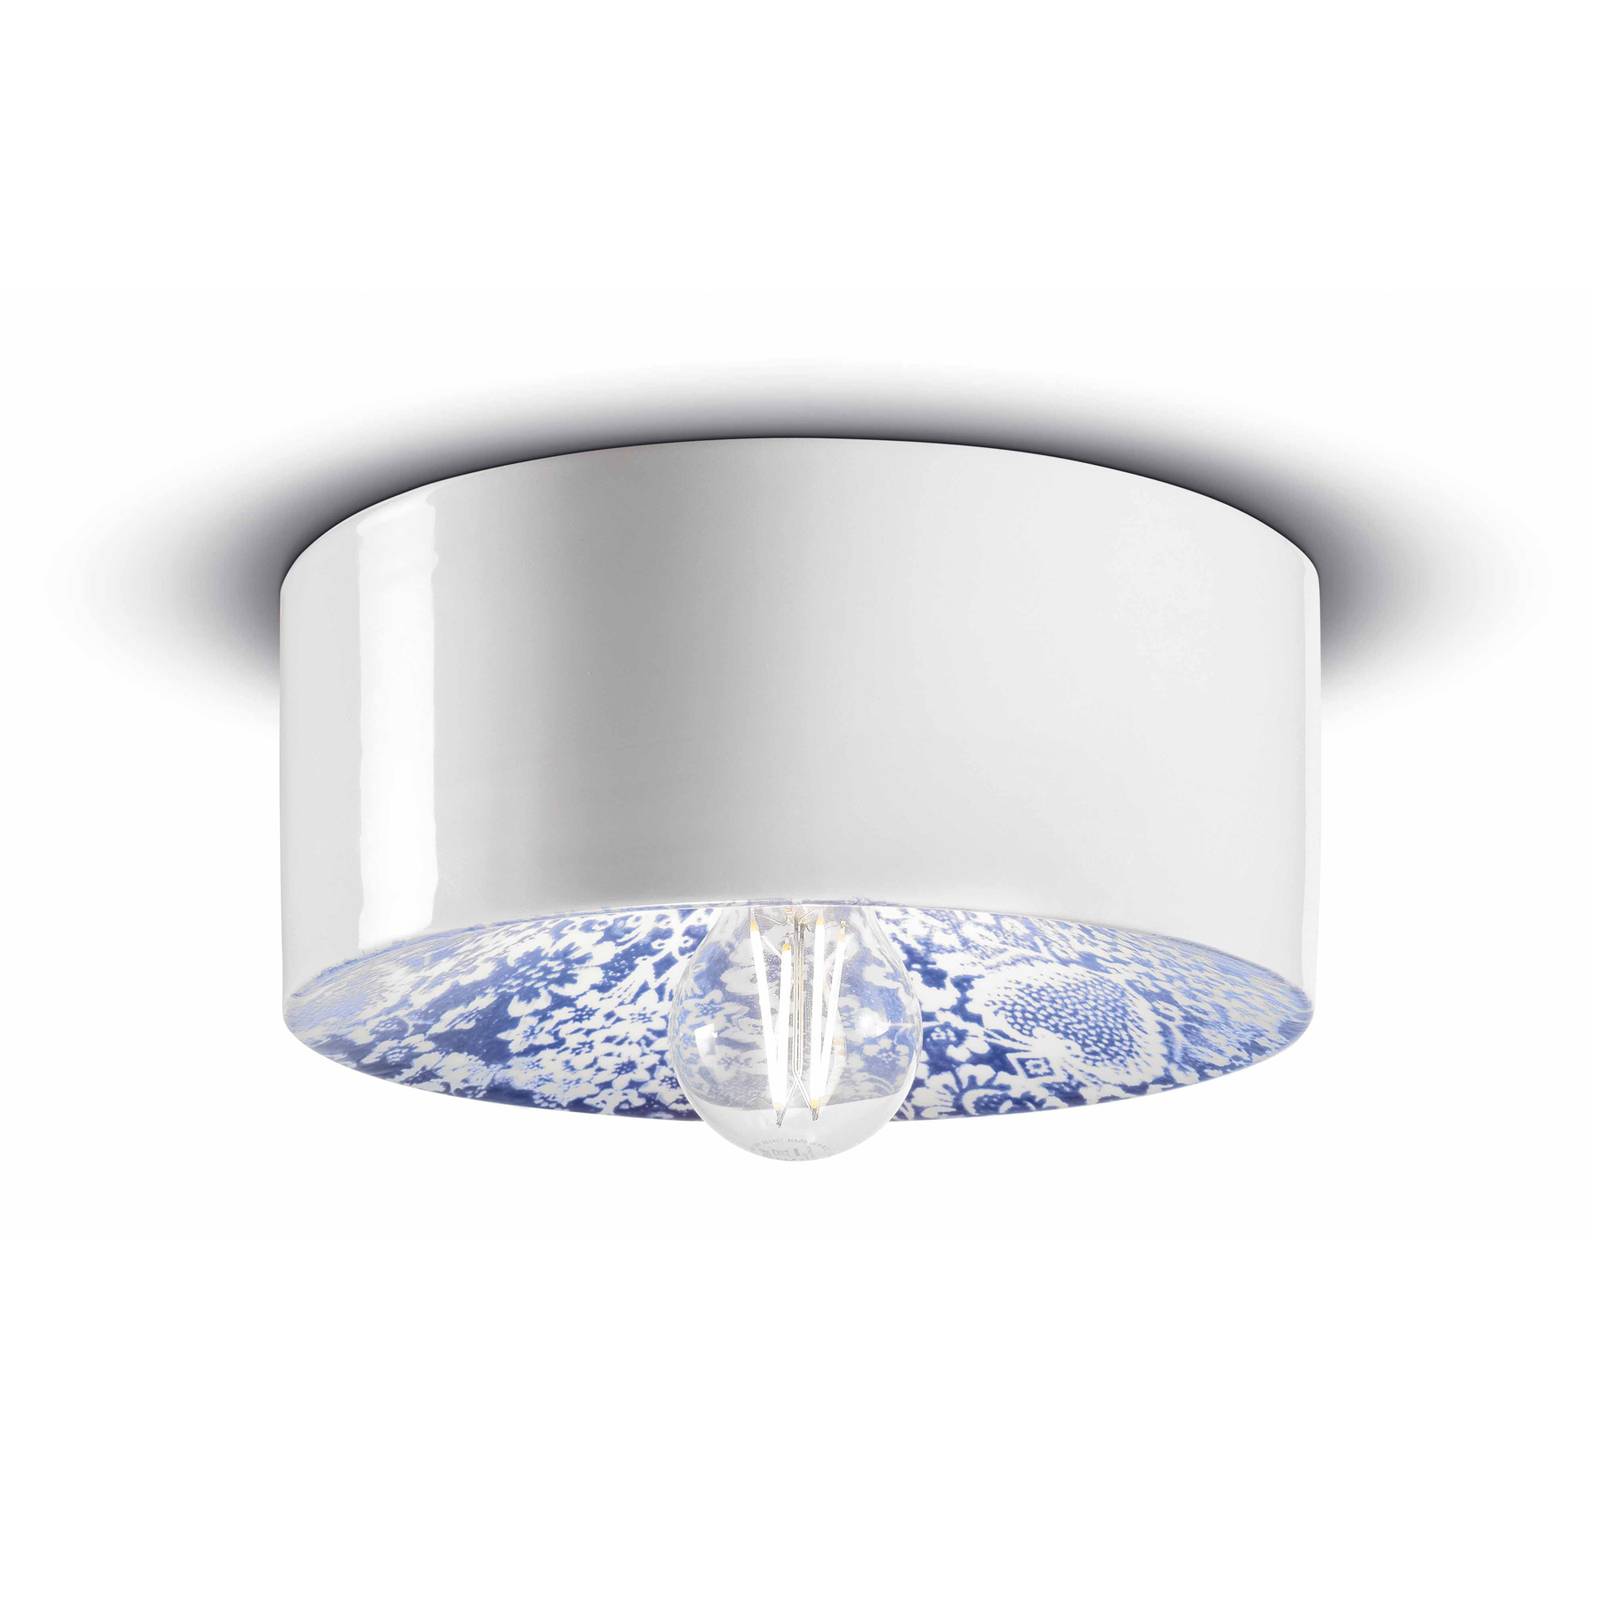 E-shop PI stropné svietidlo s kvetinovým vzorom, Ø 25 cm modrá/biela